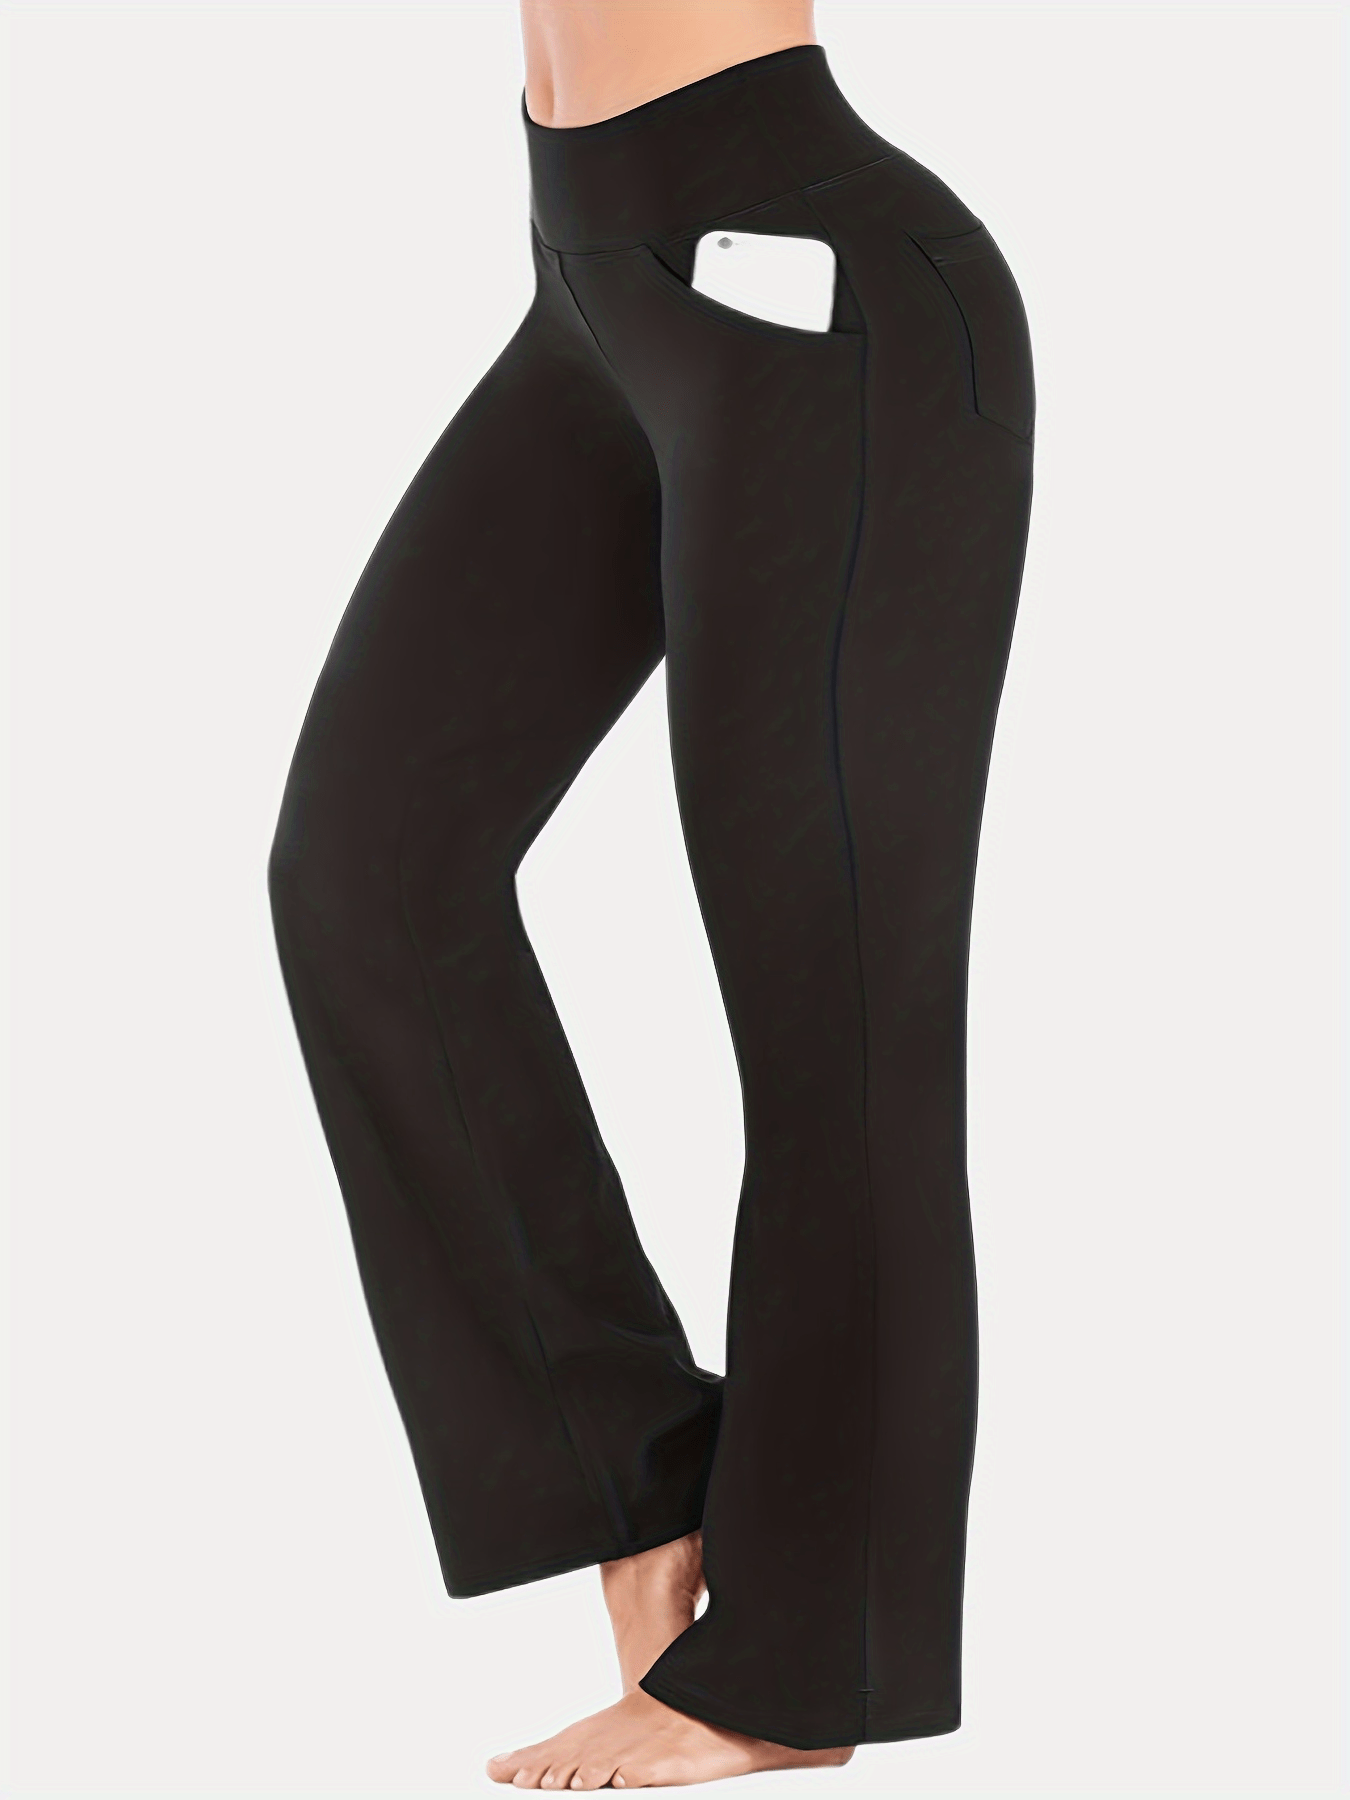 HSMQHJWE plus Size Yoga Pants for Women 2x Pockets Women Fashion Butterfly  Print Yoga Pants Plus Size Silm High Waist Sport Pants Fashion Leggings